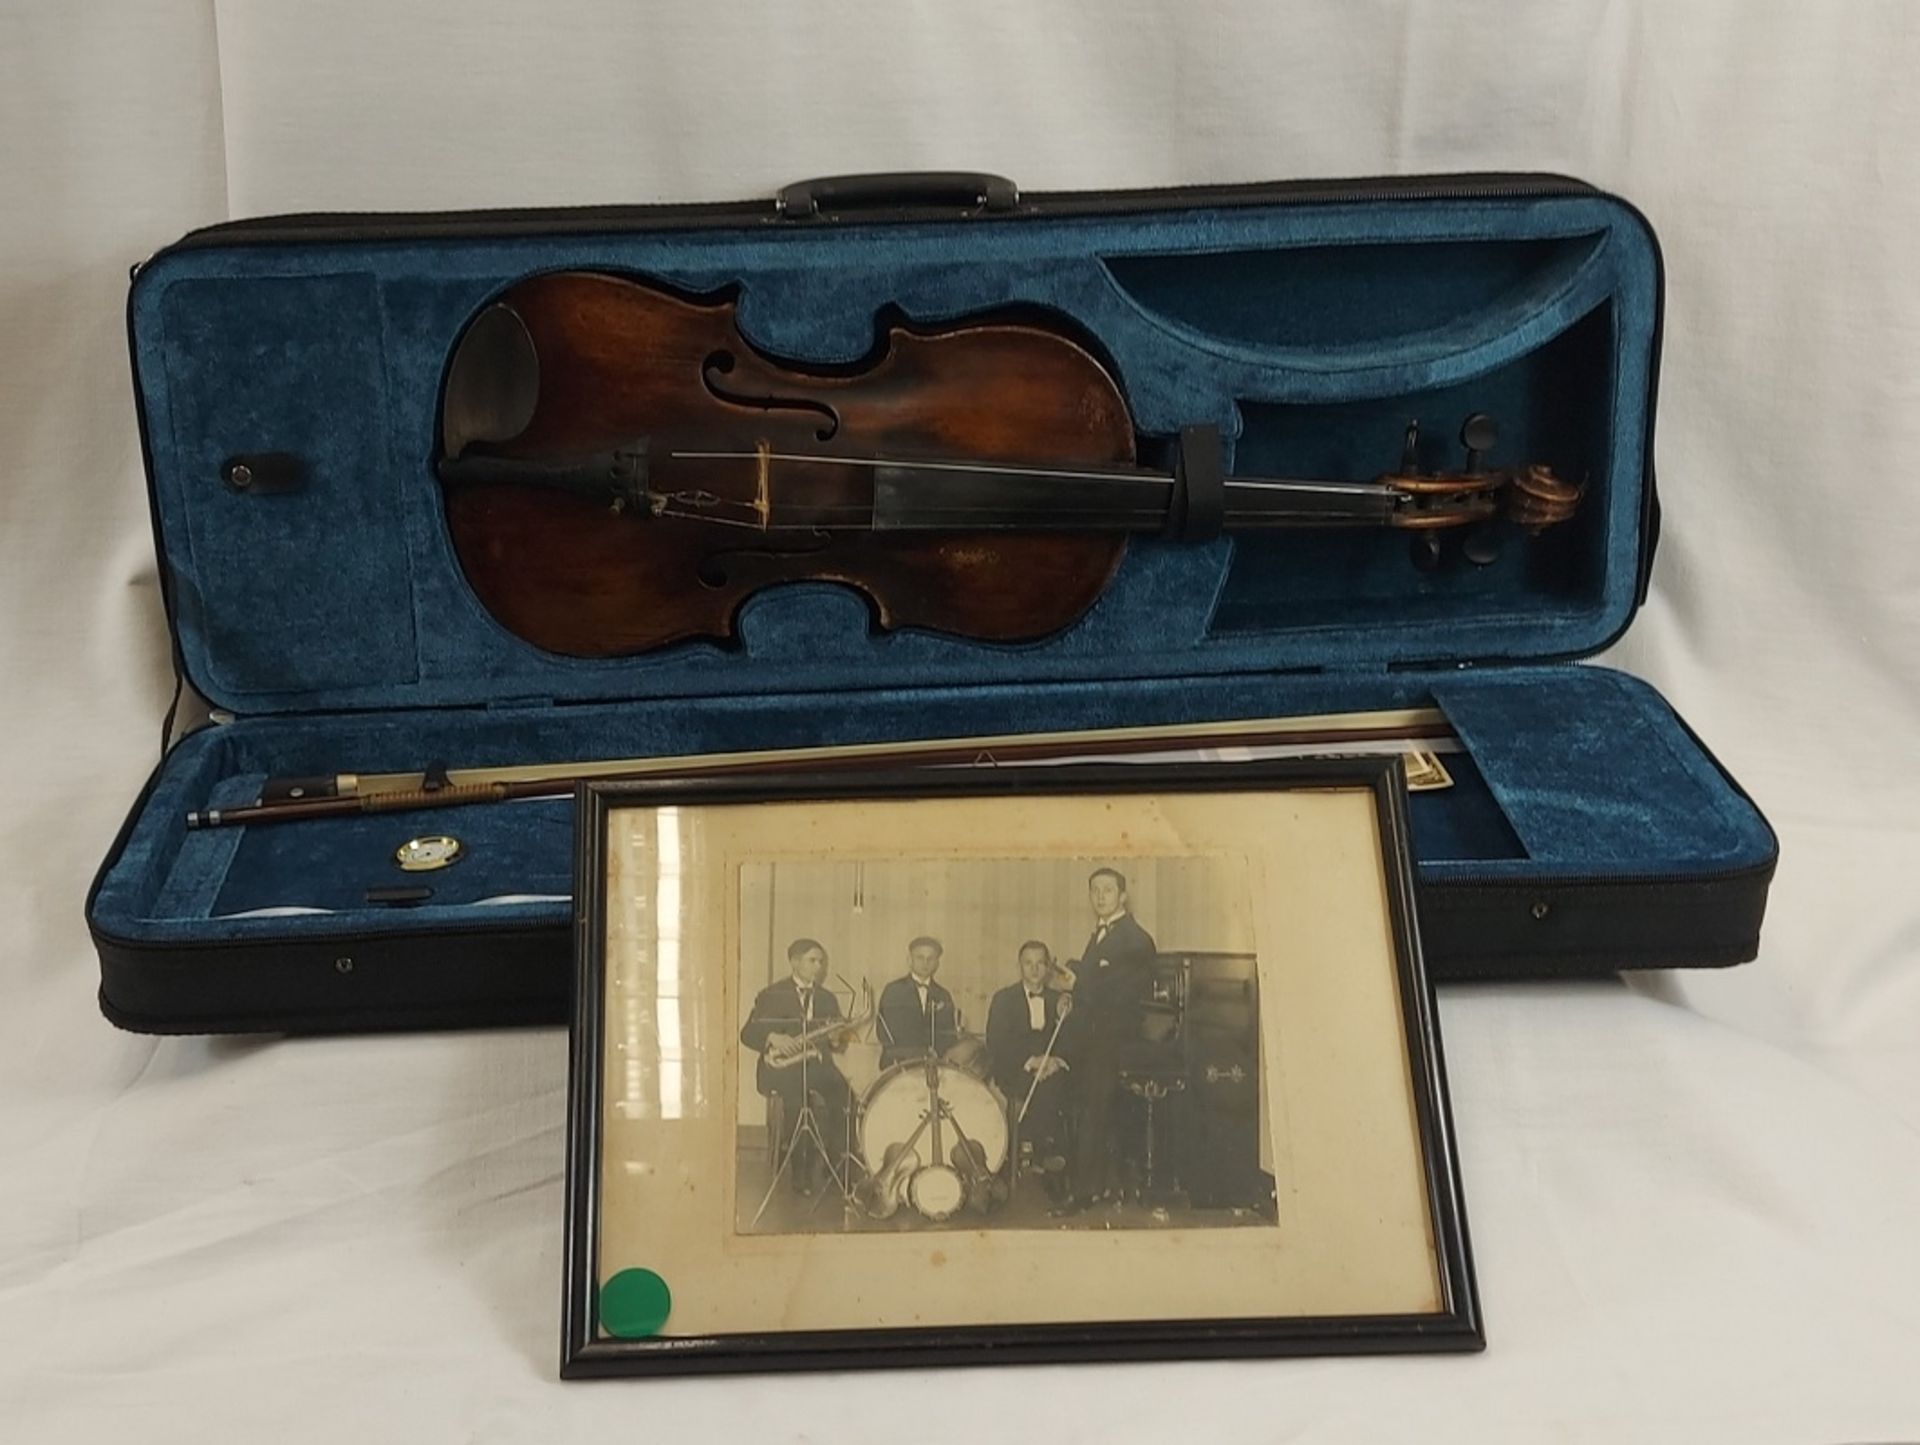 Solide alte Geige incl. Koffer und orig. Fotographie des Musikers 30er Jahre - Bild 13 aus 17